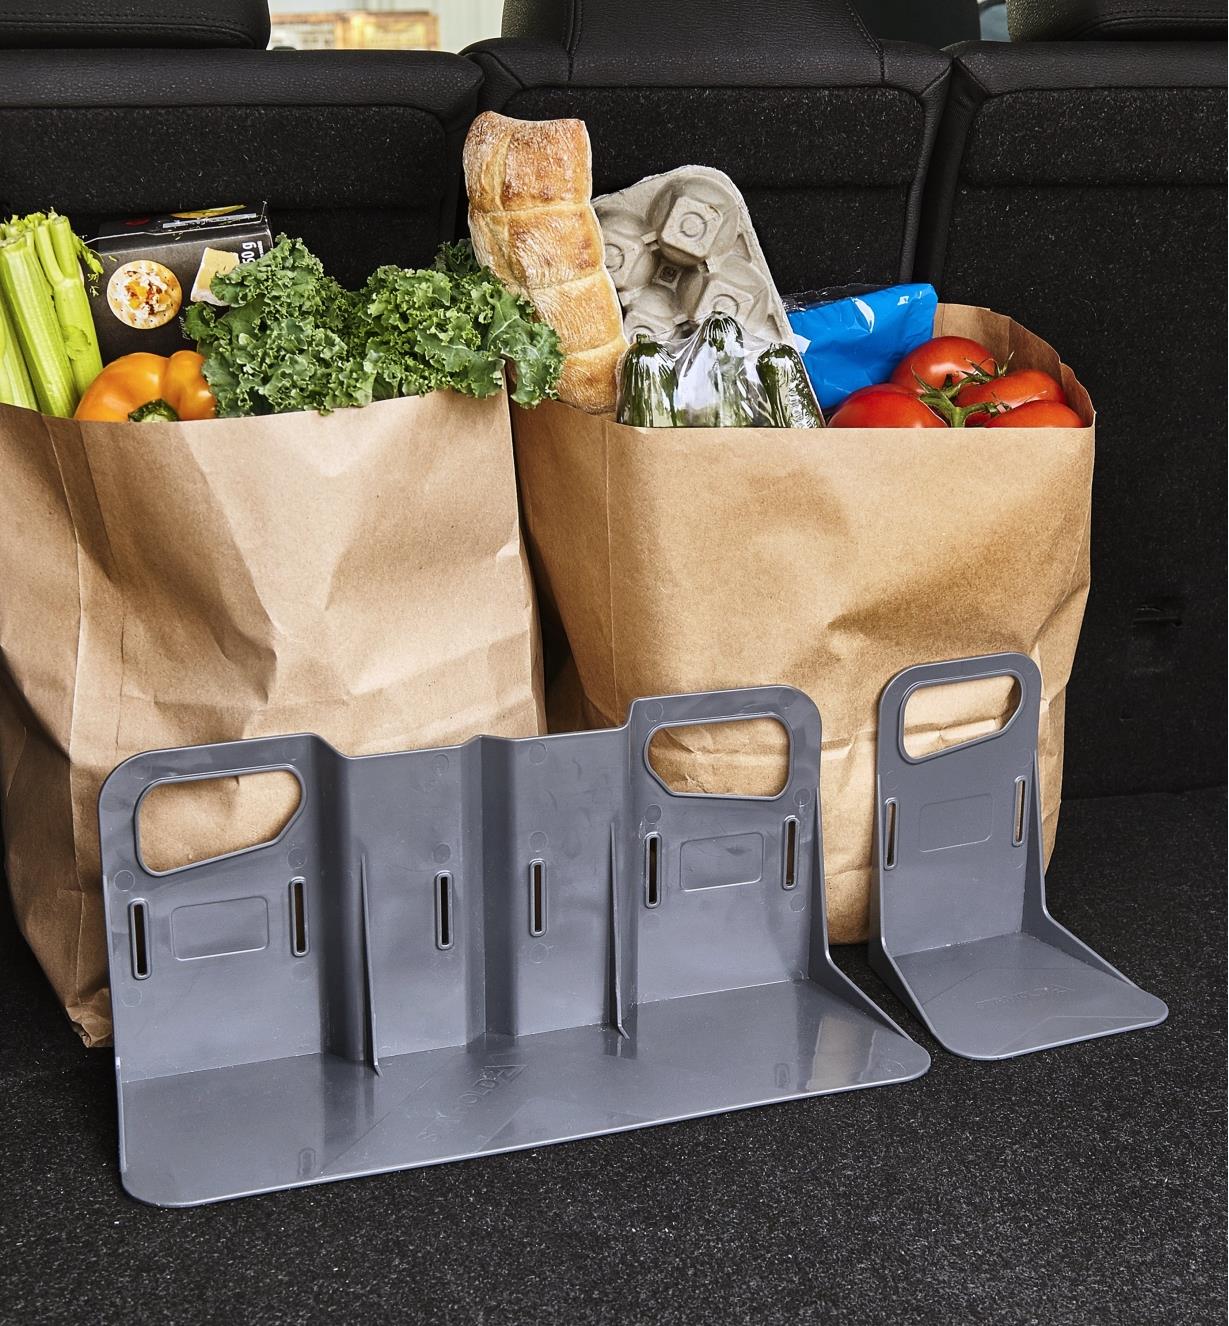 Cloisons pour coffre d'auto retenant deux sacs d'épicerie dans le coffre d’un véhicule